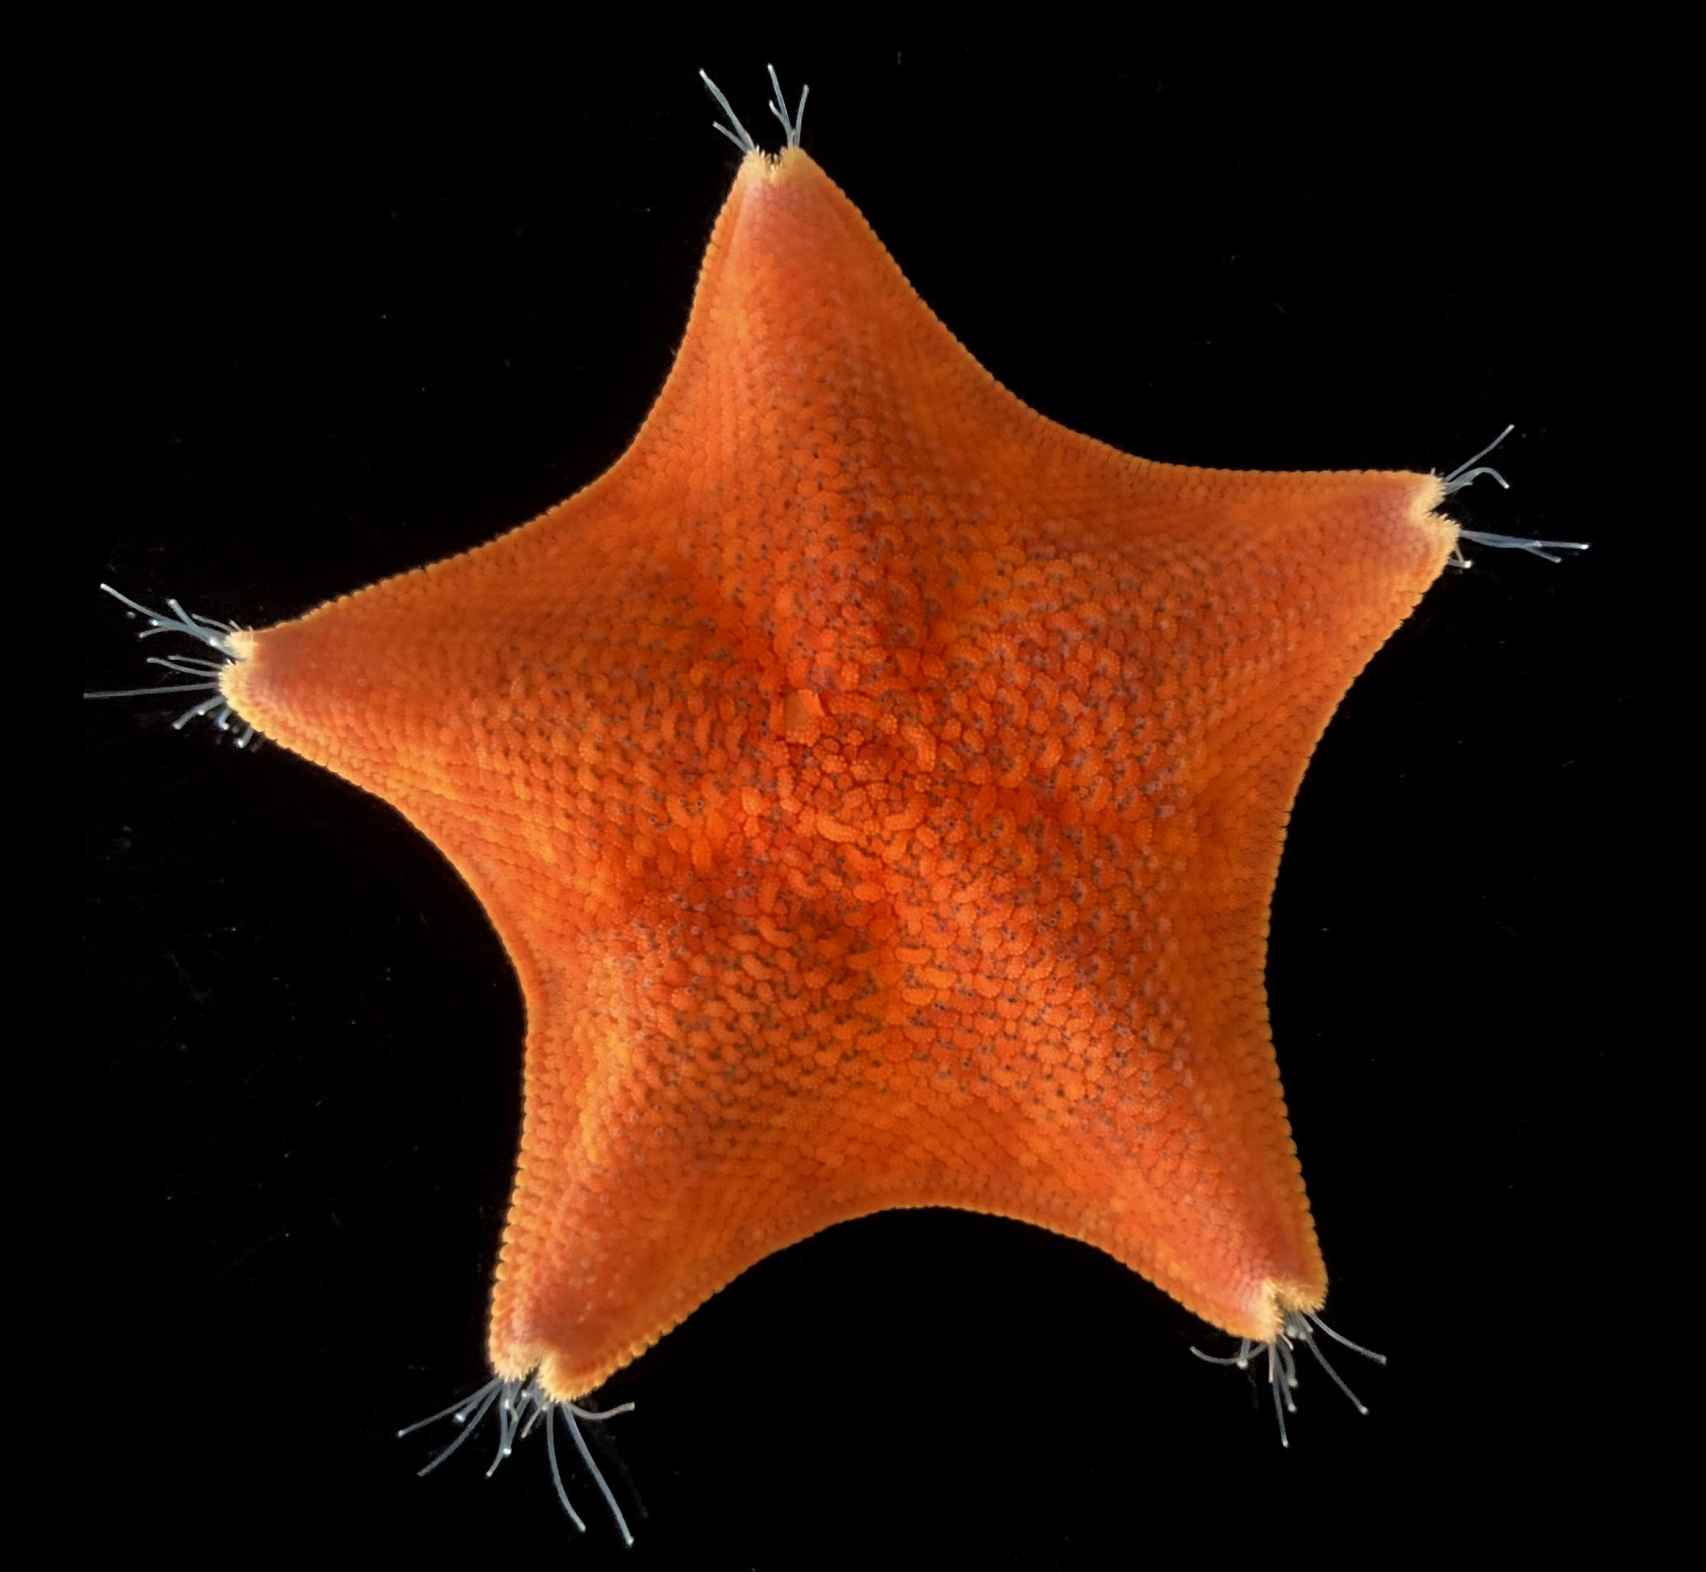 La inusual simetría de cinco ejes de las estrellas de mar ha confundido durante mucho tiempo nuestra comprensión de la evolución animal.